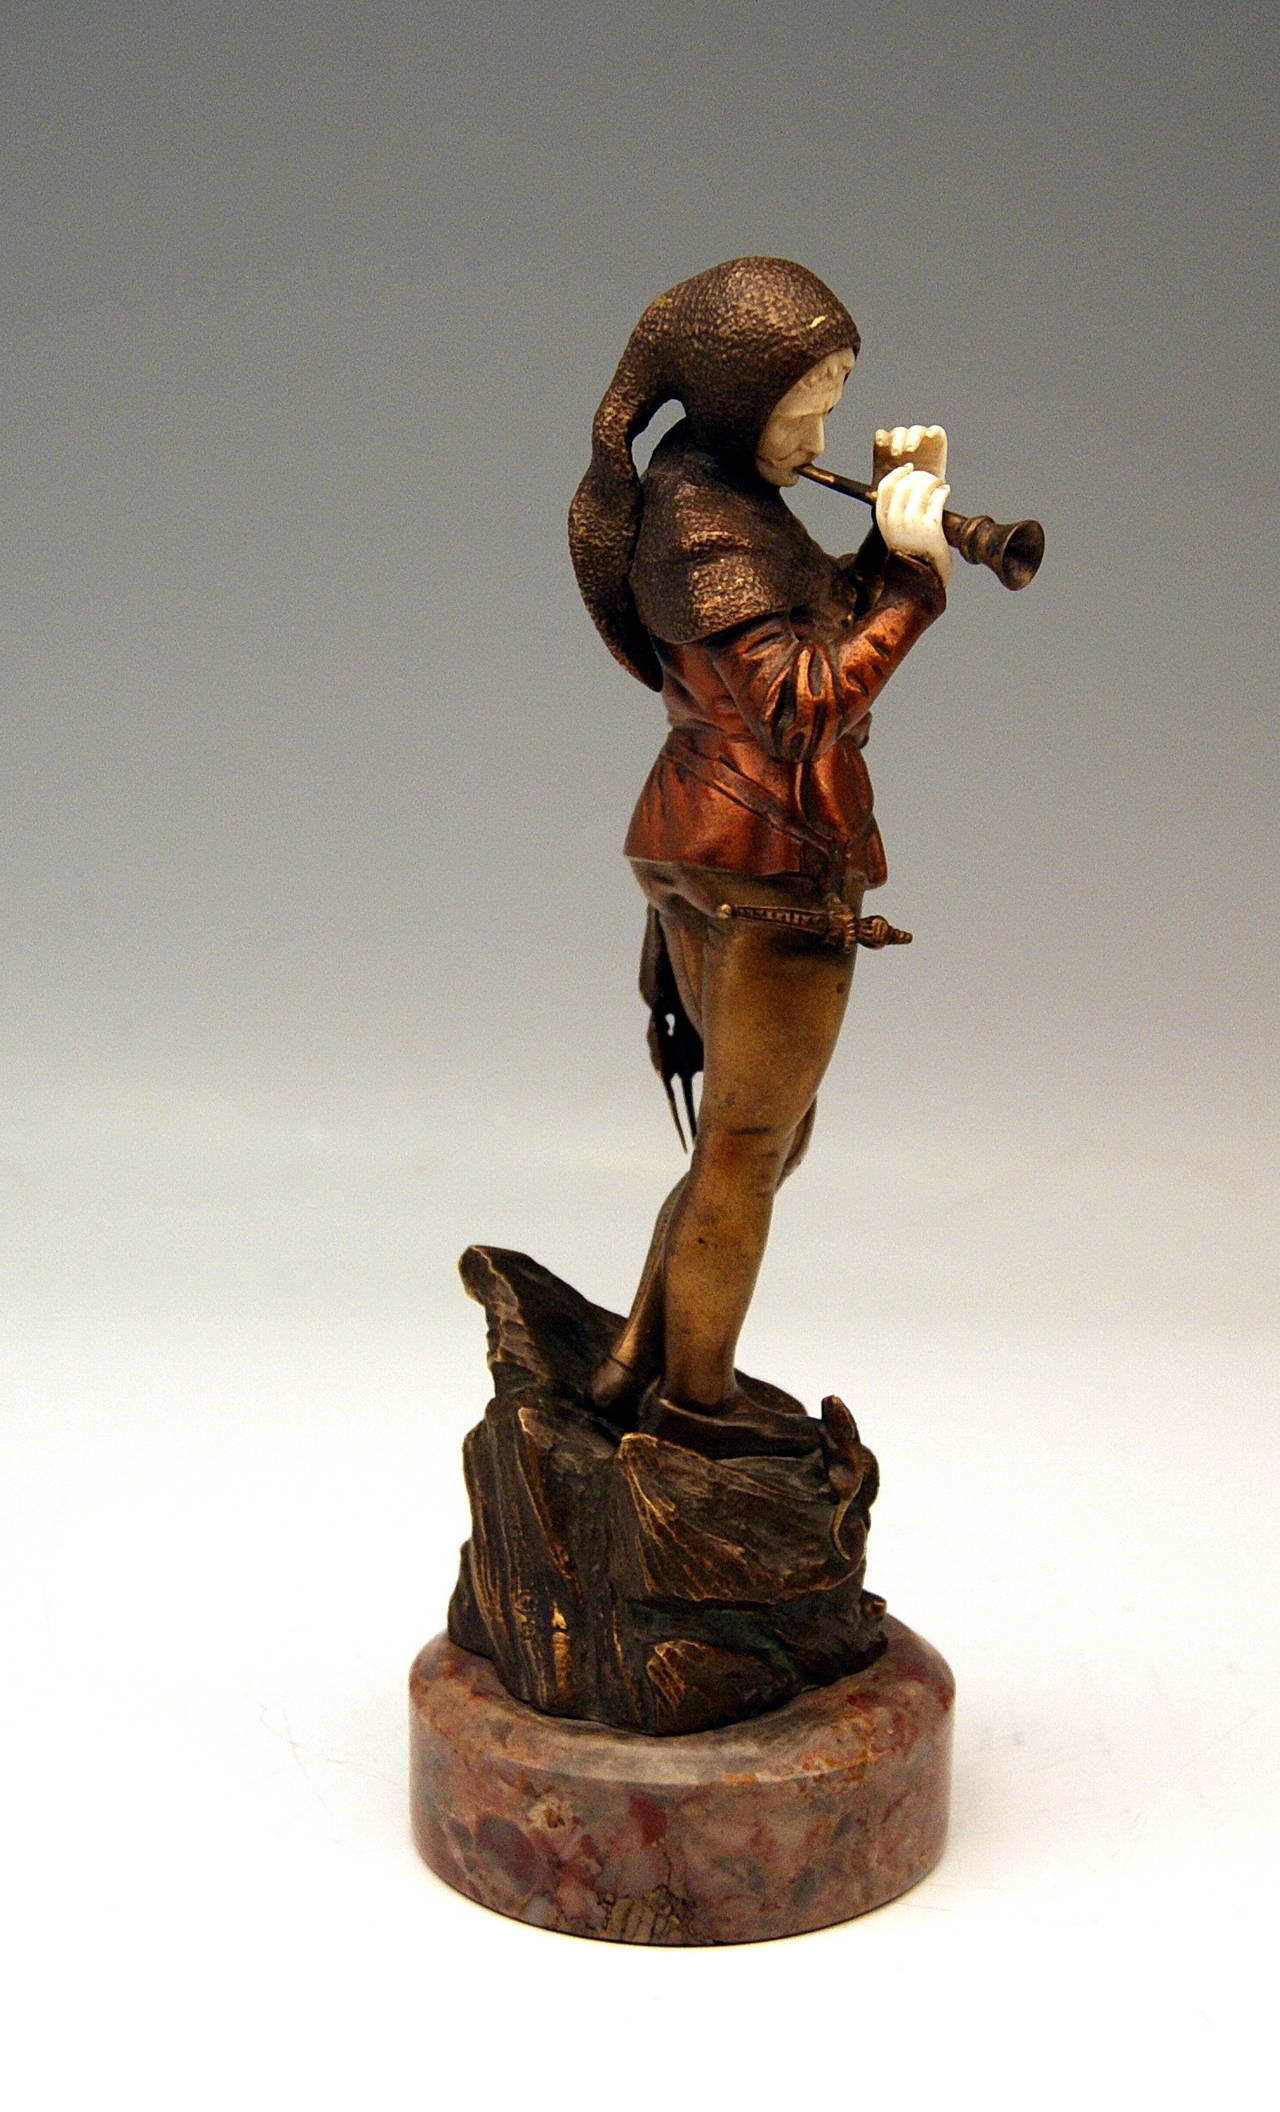 Il existe un  GORGEUSE FIGURINE EN BRONZE présentée : 
C'est le Joueur de flûte de Hamelin* qui joue du pipeau.  
L'impression de la figurine est très fine - elle semble très réaliste !  La figurine de l'homme est vêtue de vêtements médiévaux. 